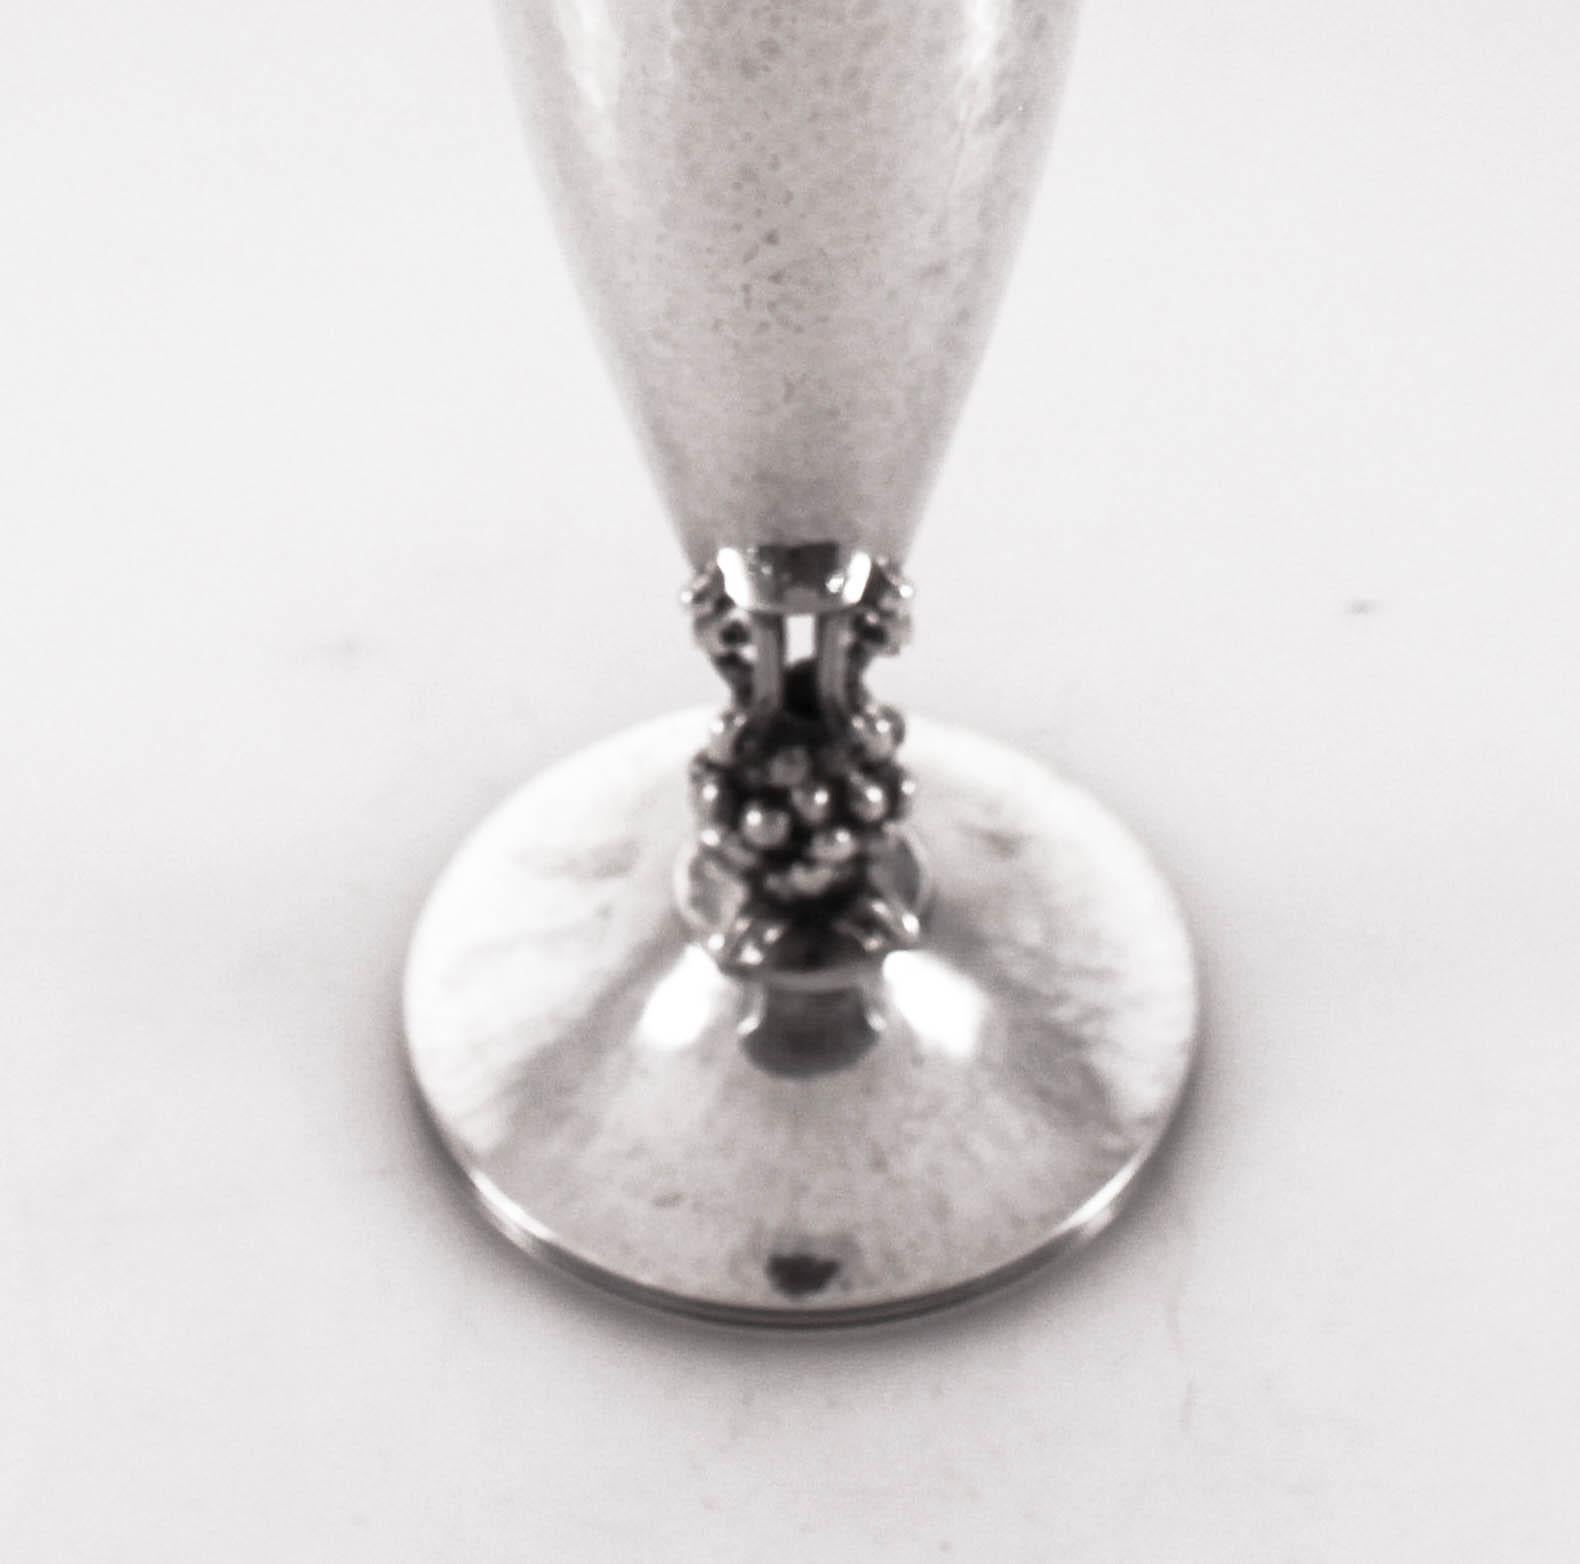 Wir sind stolz darauf, diese dänische Vase aus Sterlingsilber anbieten zu können. Handgehämmert und nicht beschwert. Es hat eine schöne geschwungene ovale Form - breiter in der Mitte und oben und unten zugeschnitten. Zwischen dem Sockel und dem